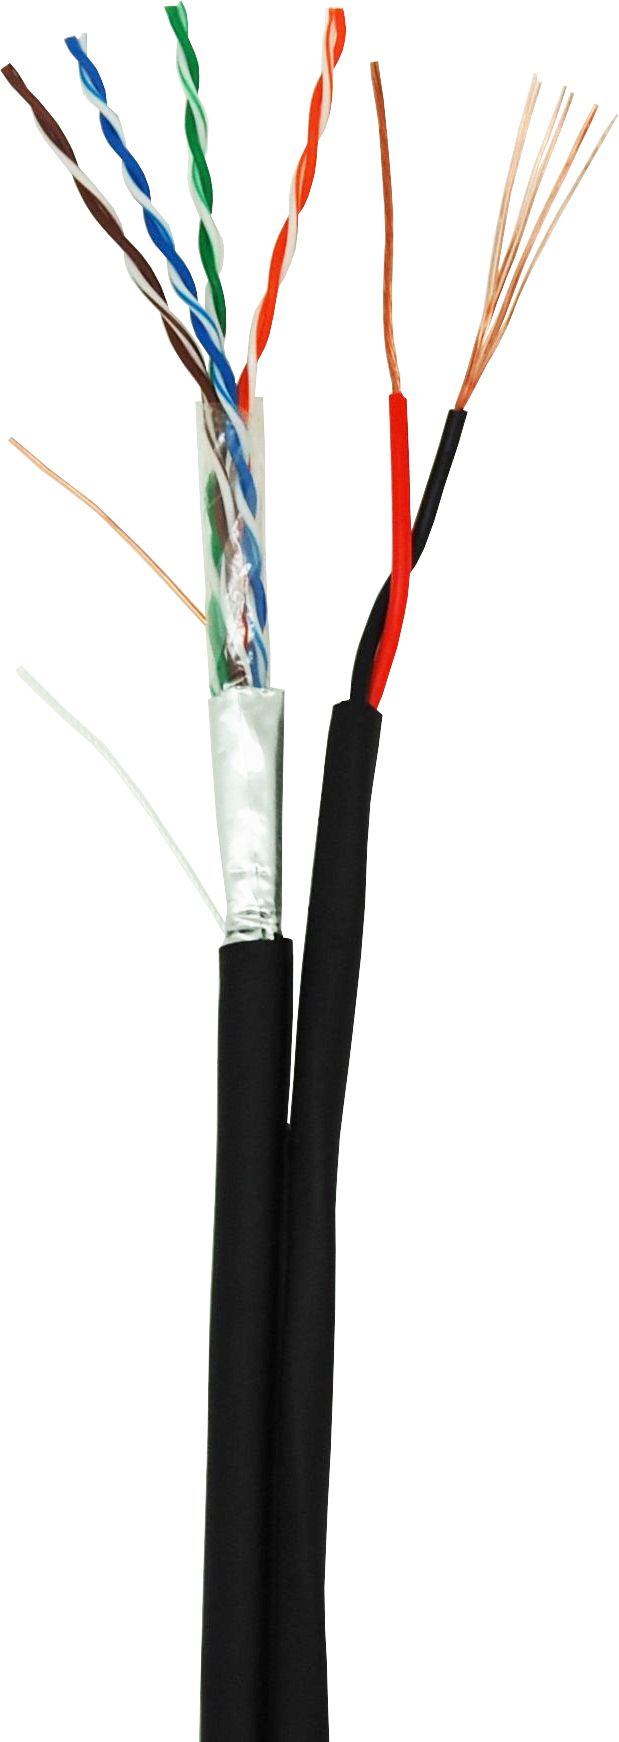 Кабель F/UTP 4 пары, Кат.5e, 100МГц, одножильный, BC, с силовым кабелем 2х0,5 мм2, внешний, PE до -40C, черный, 305м